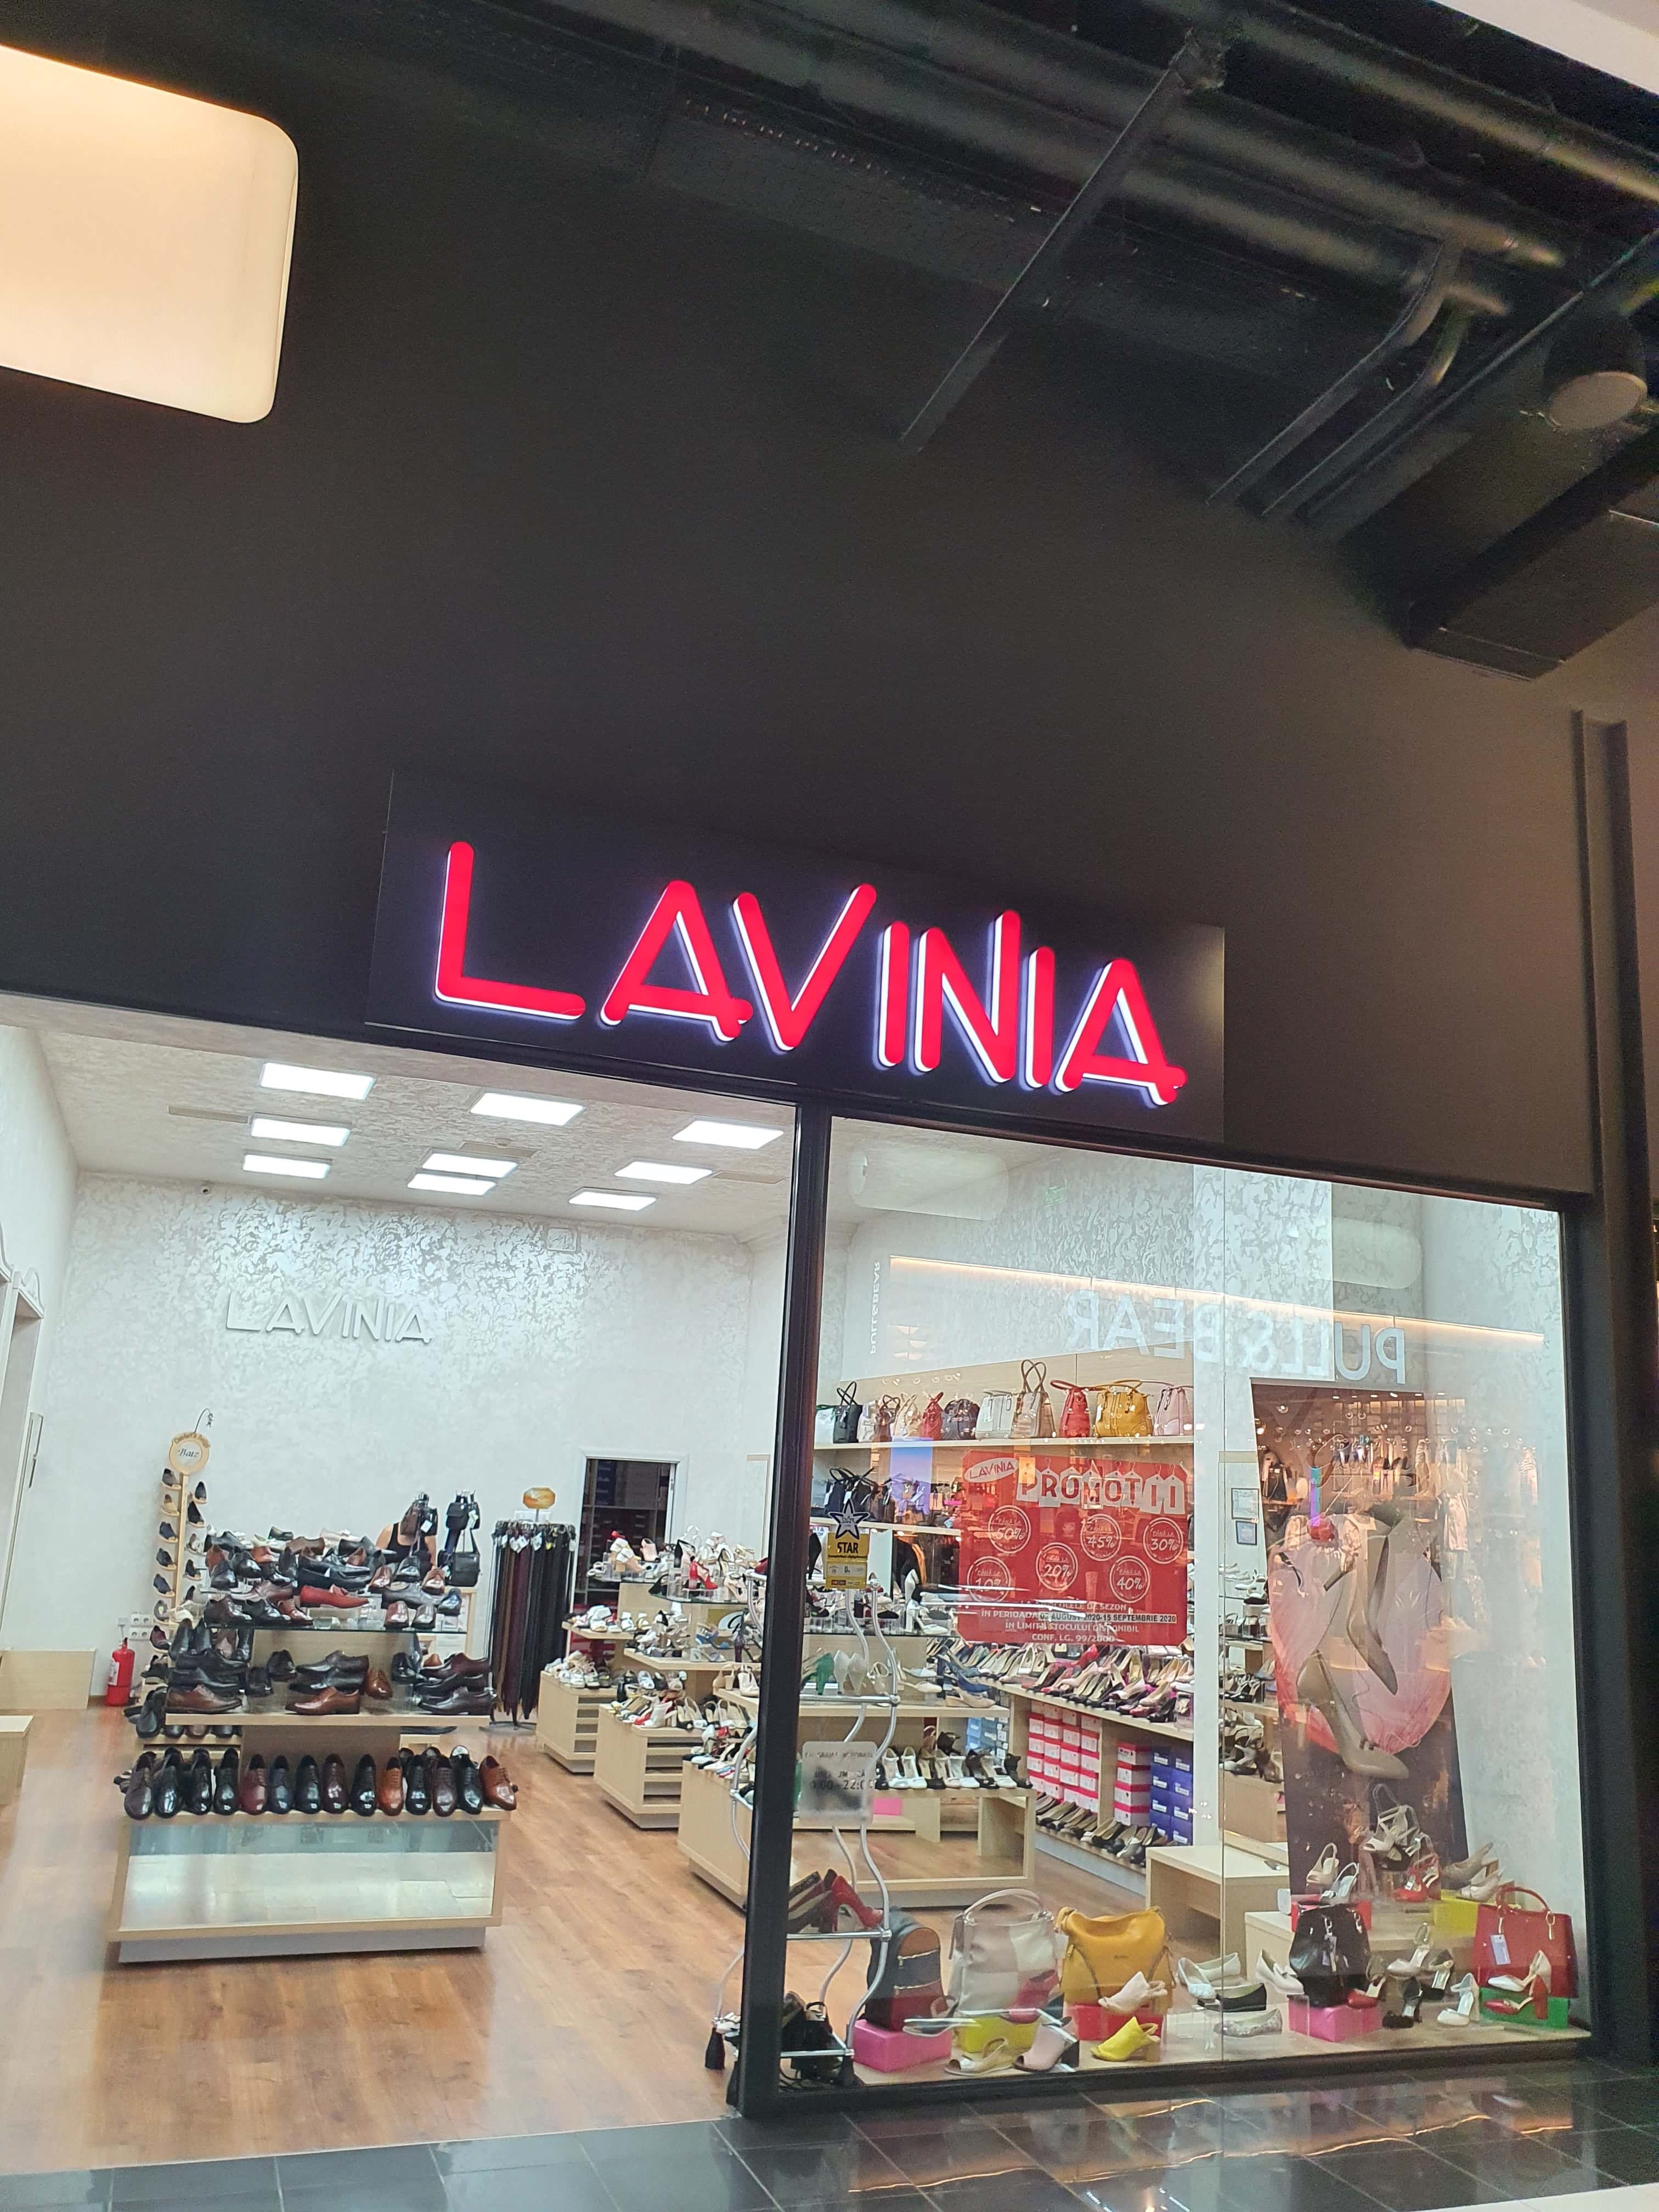 Magazin Lavinia (lavis.ro) - Braila, Promenada Mall